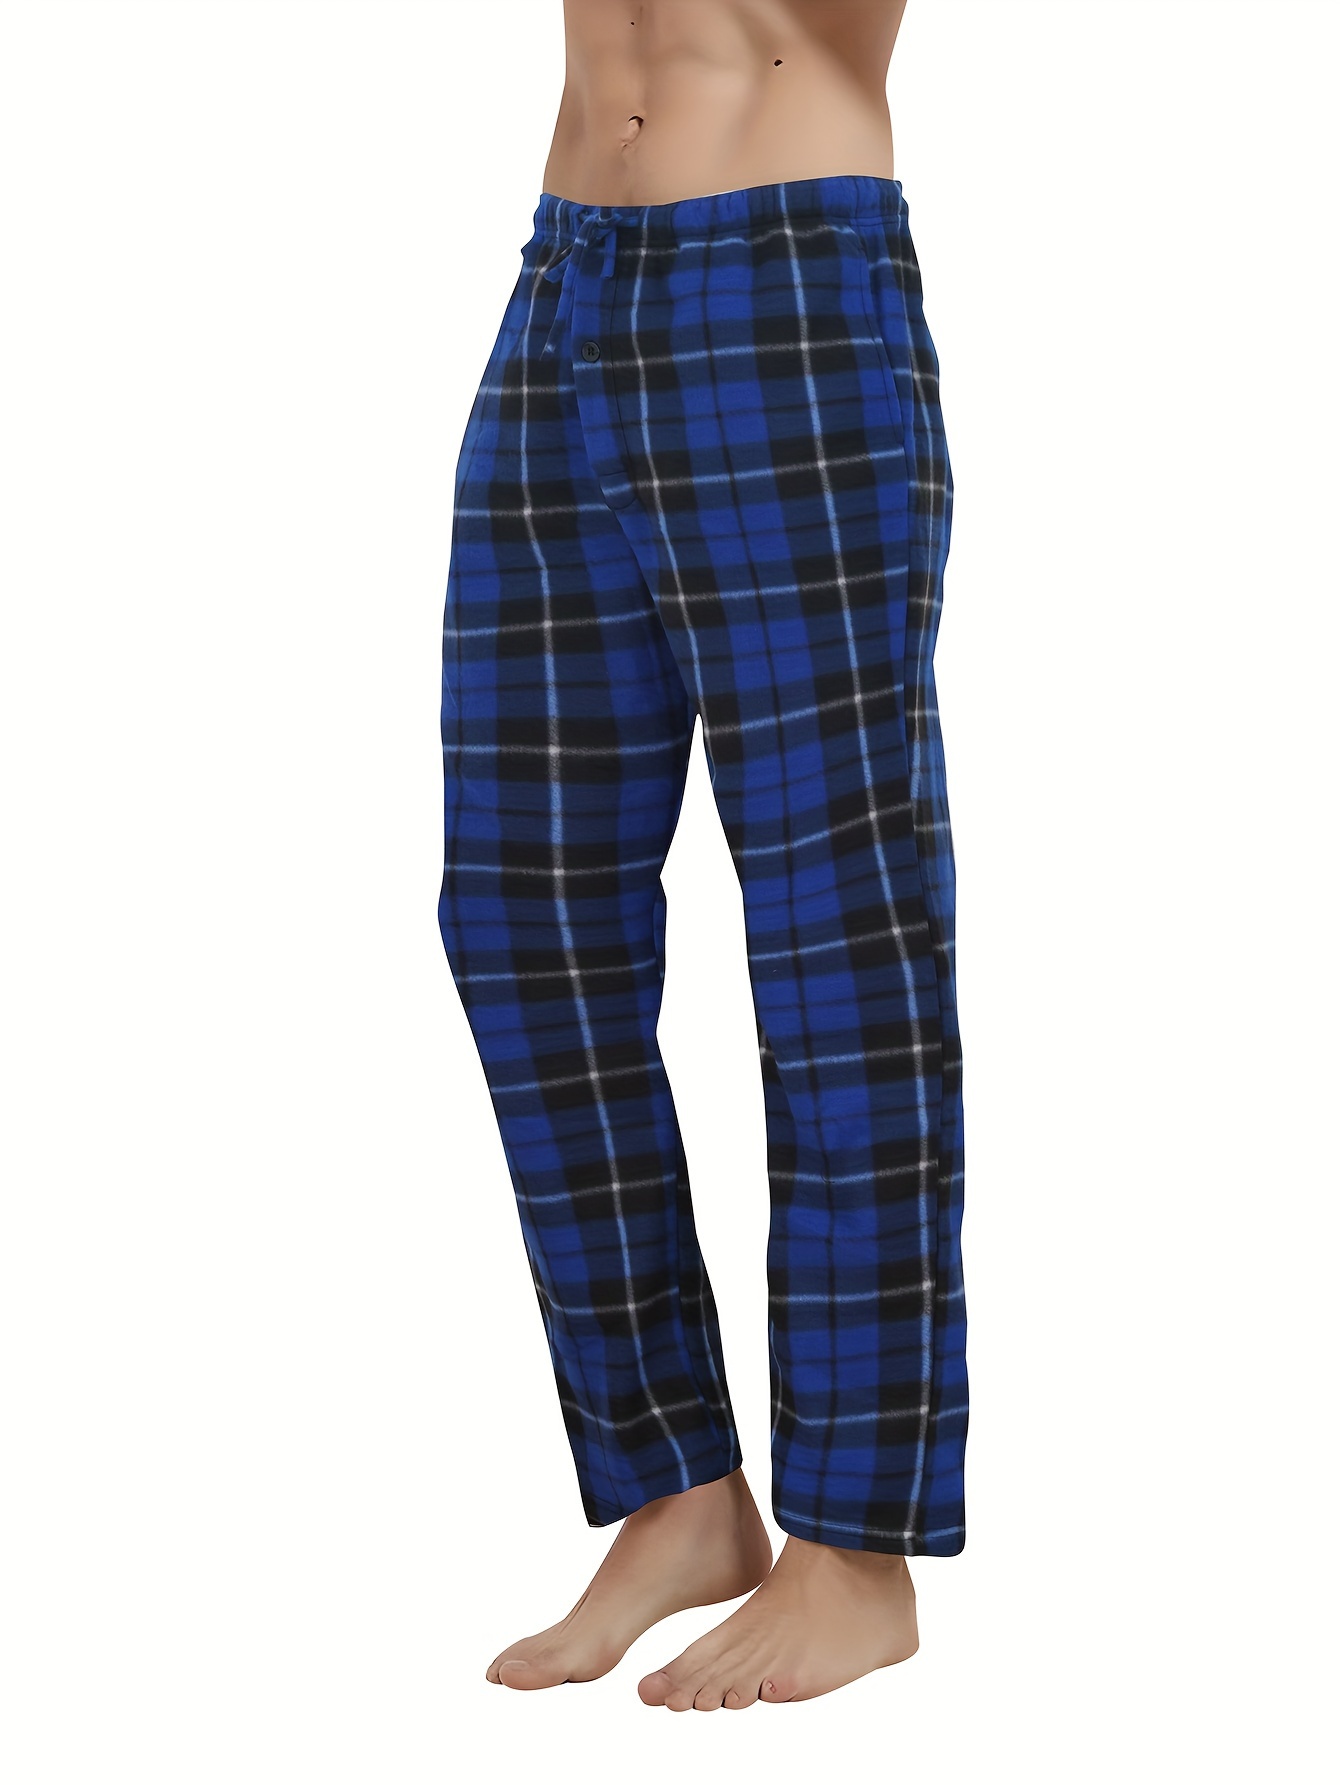 2-pack Regular Fit Pajama Pants - Dark blue/plaid - Men